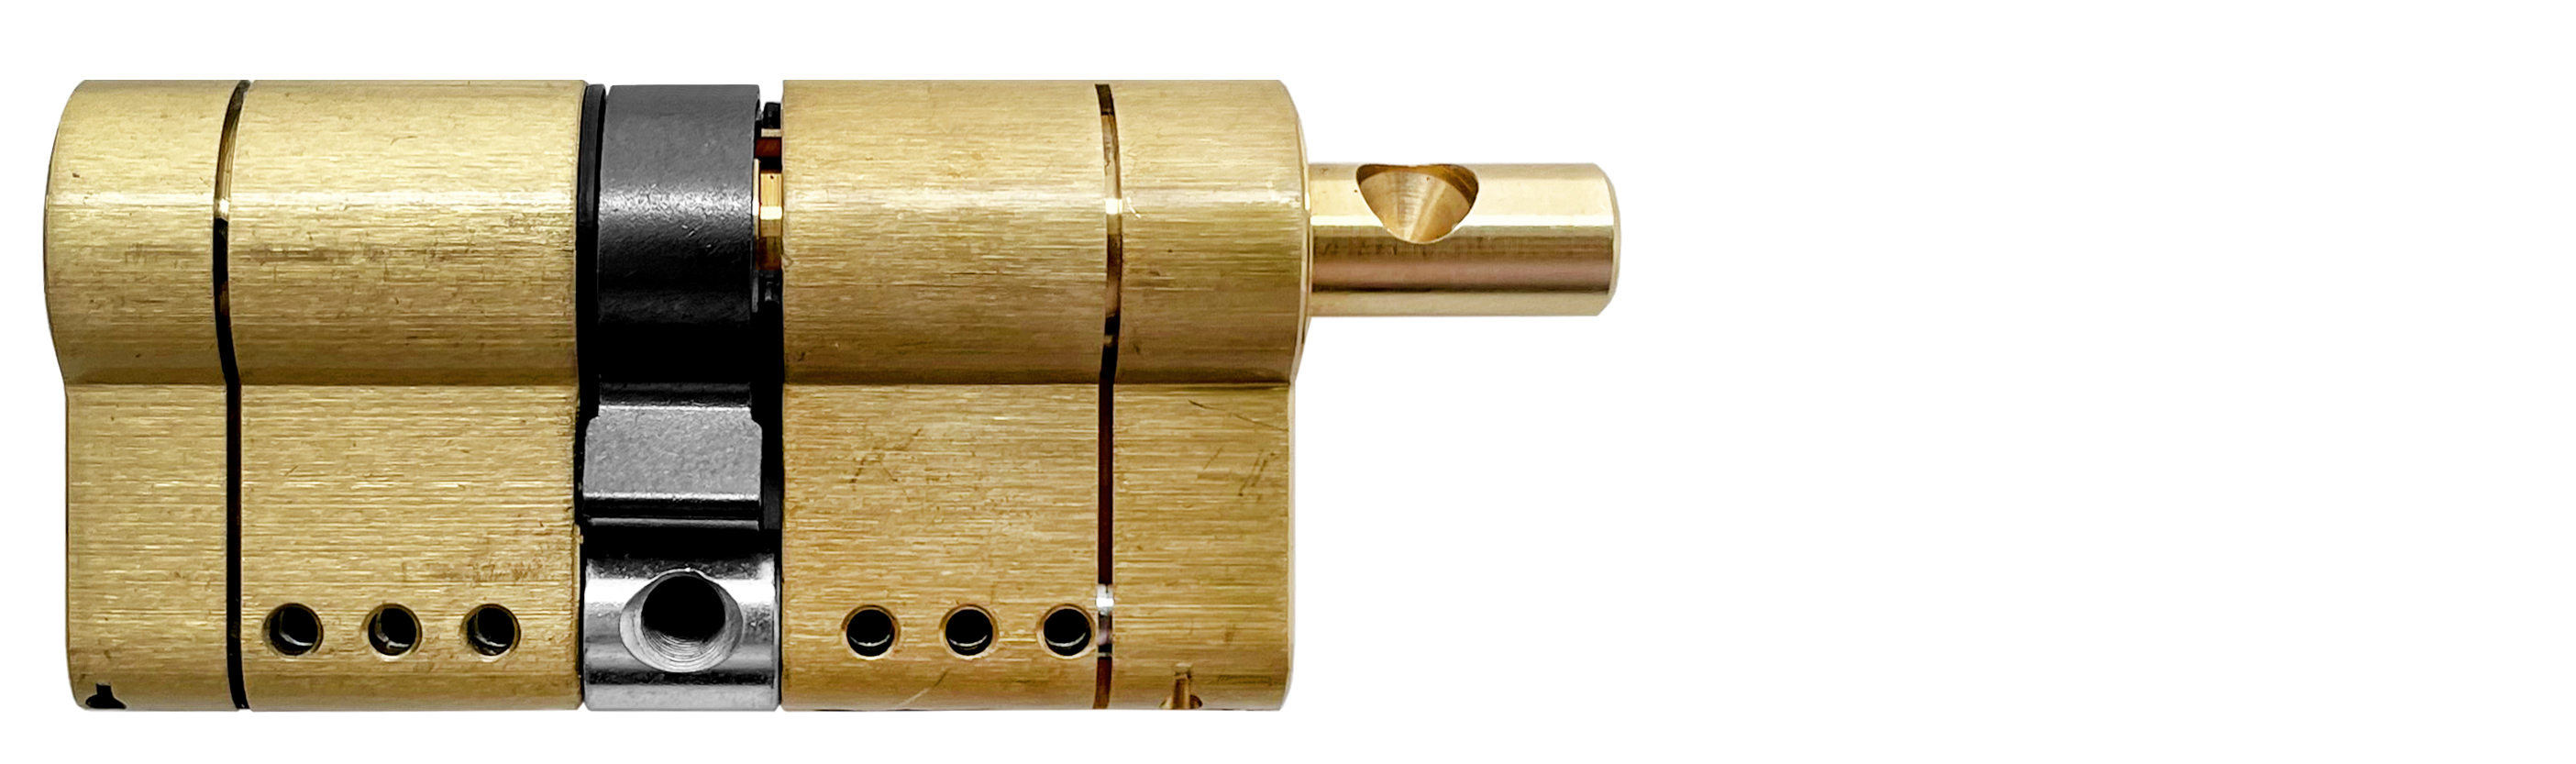 Цилиндр MOTTURA PRO 82(31+51)мм, ключ/вертушка, латунь формы для наращивания ногтей узкие 50 шт золотистый